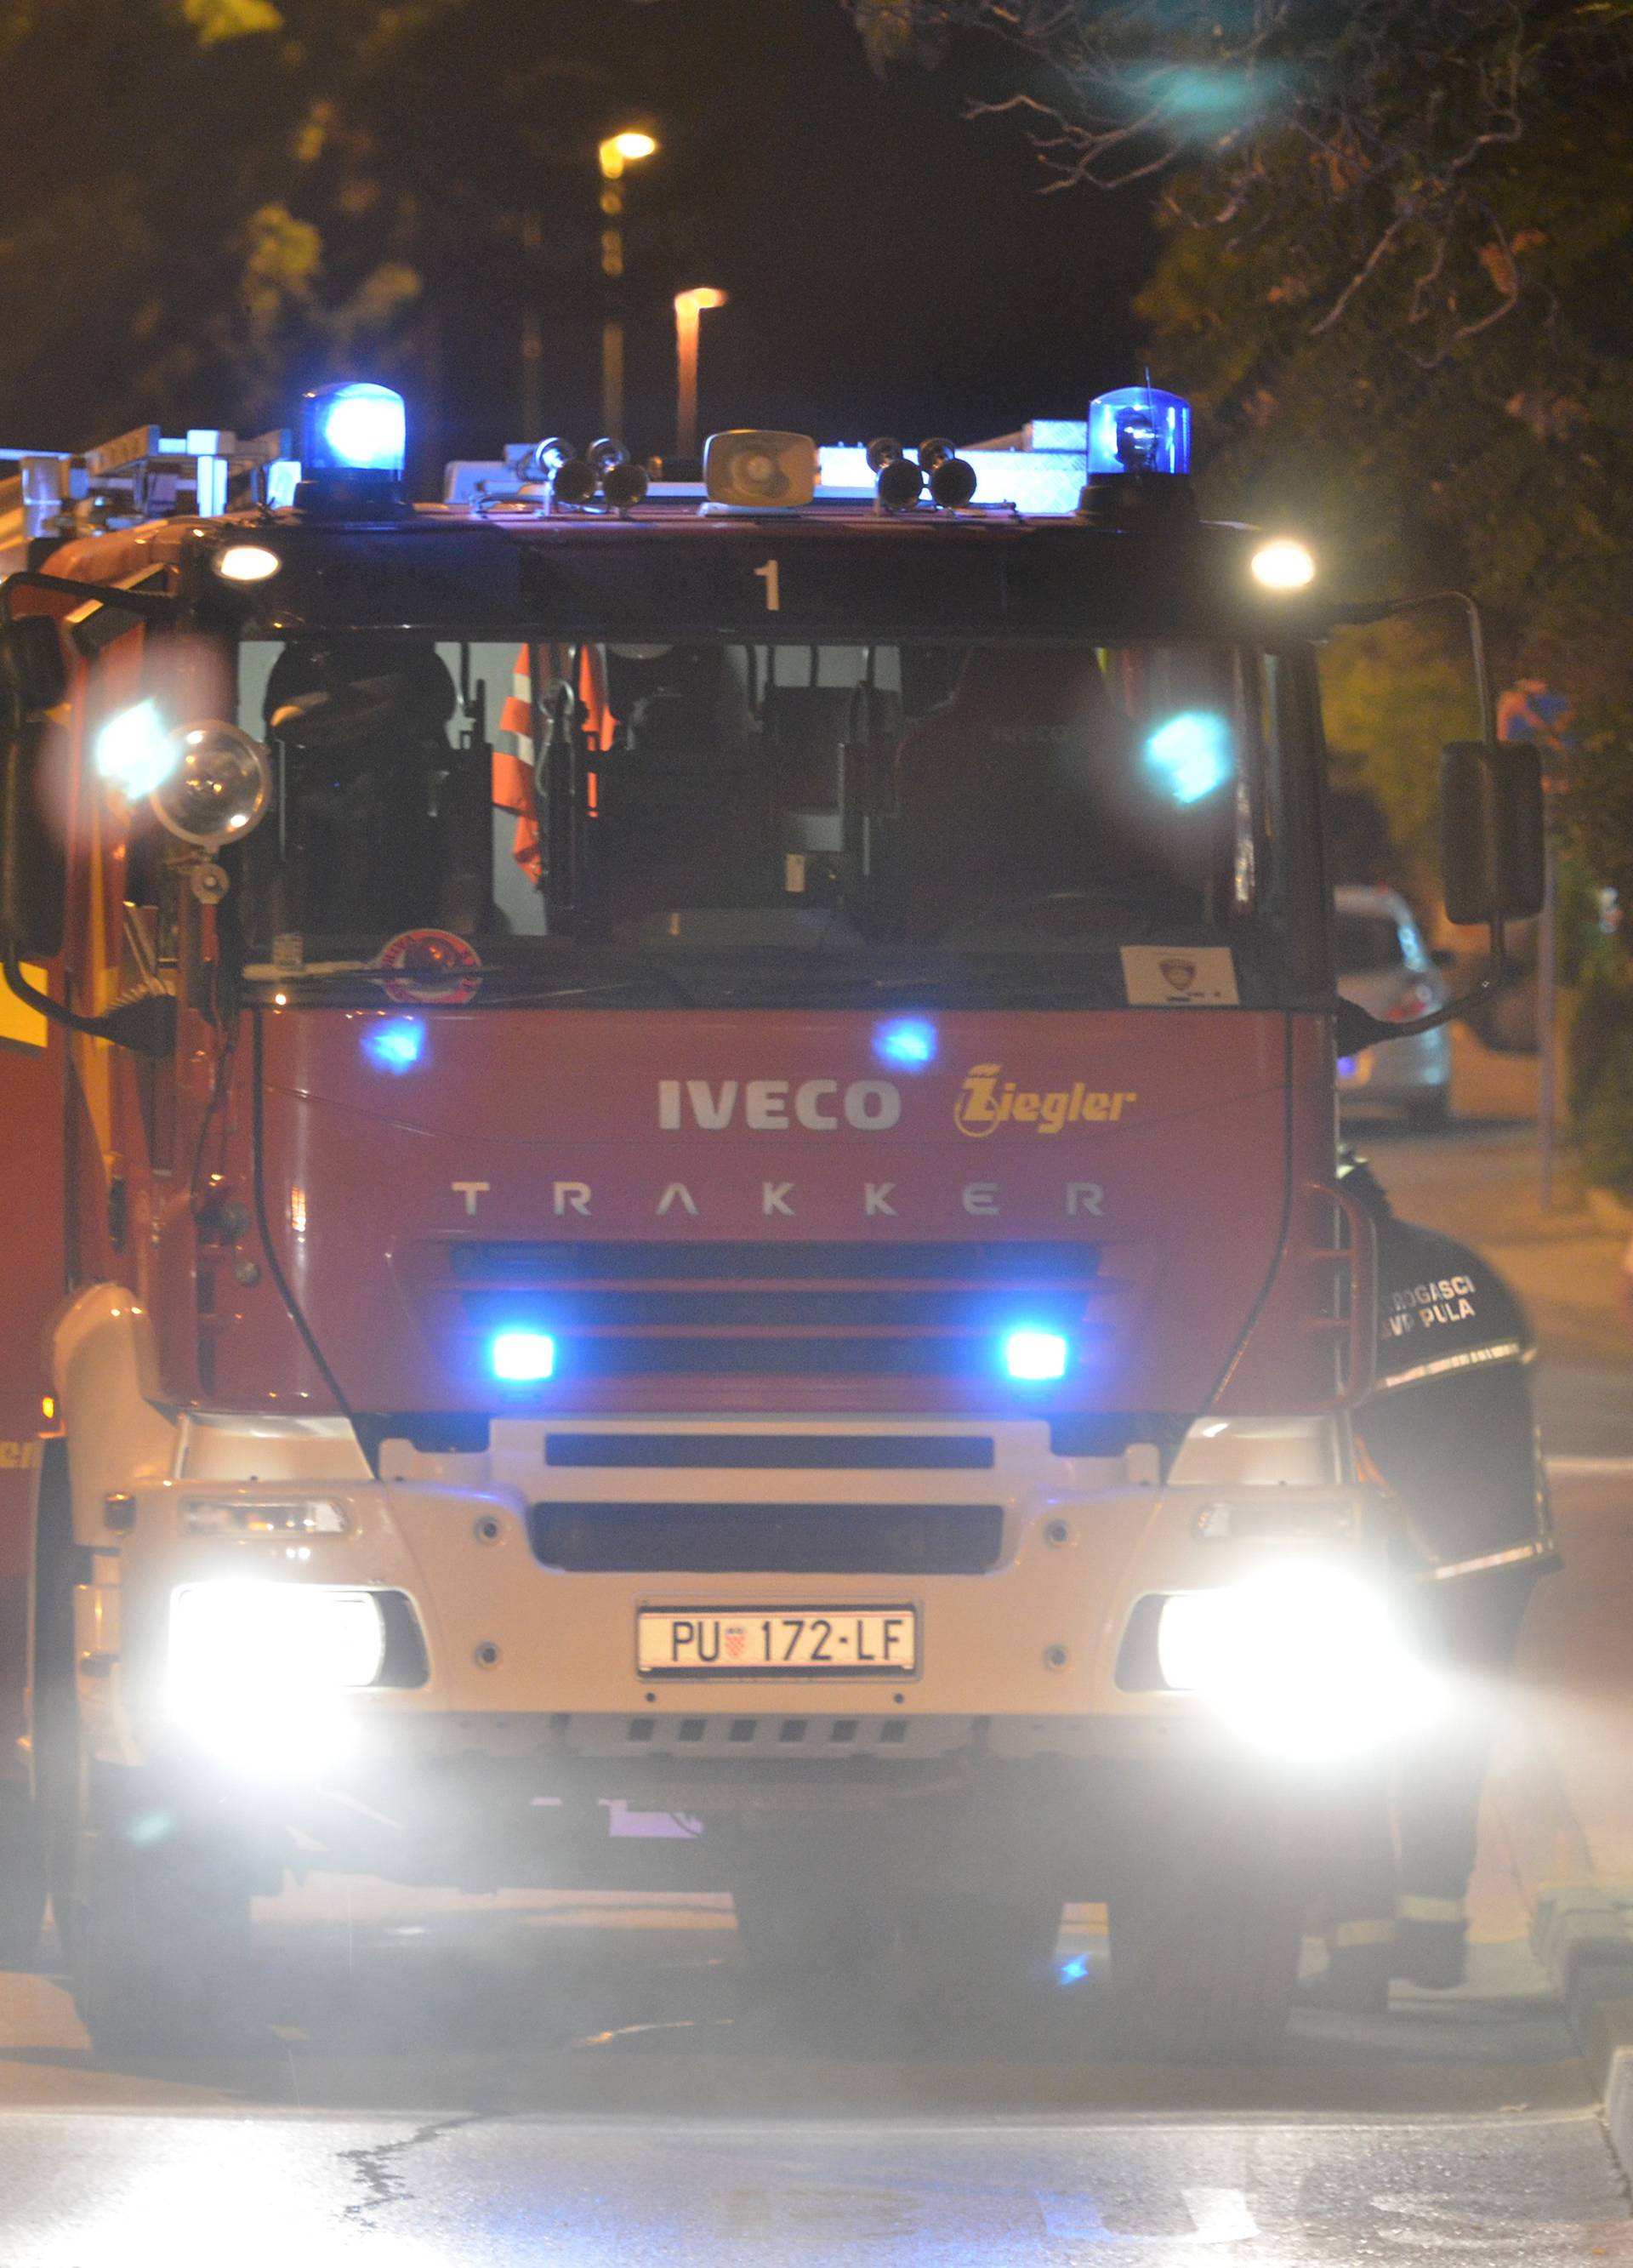 Zapalio se gradski autobus u Puli, srećom nema ozlijeđenih